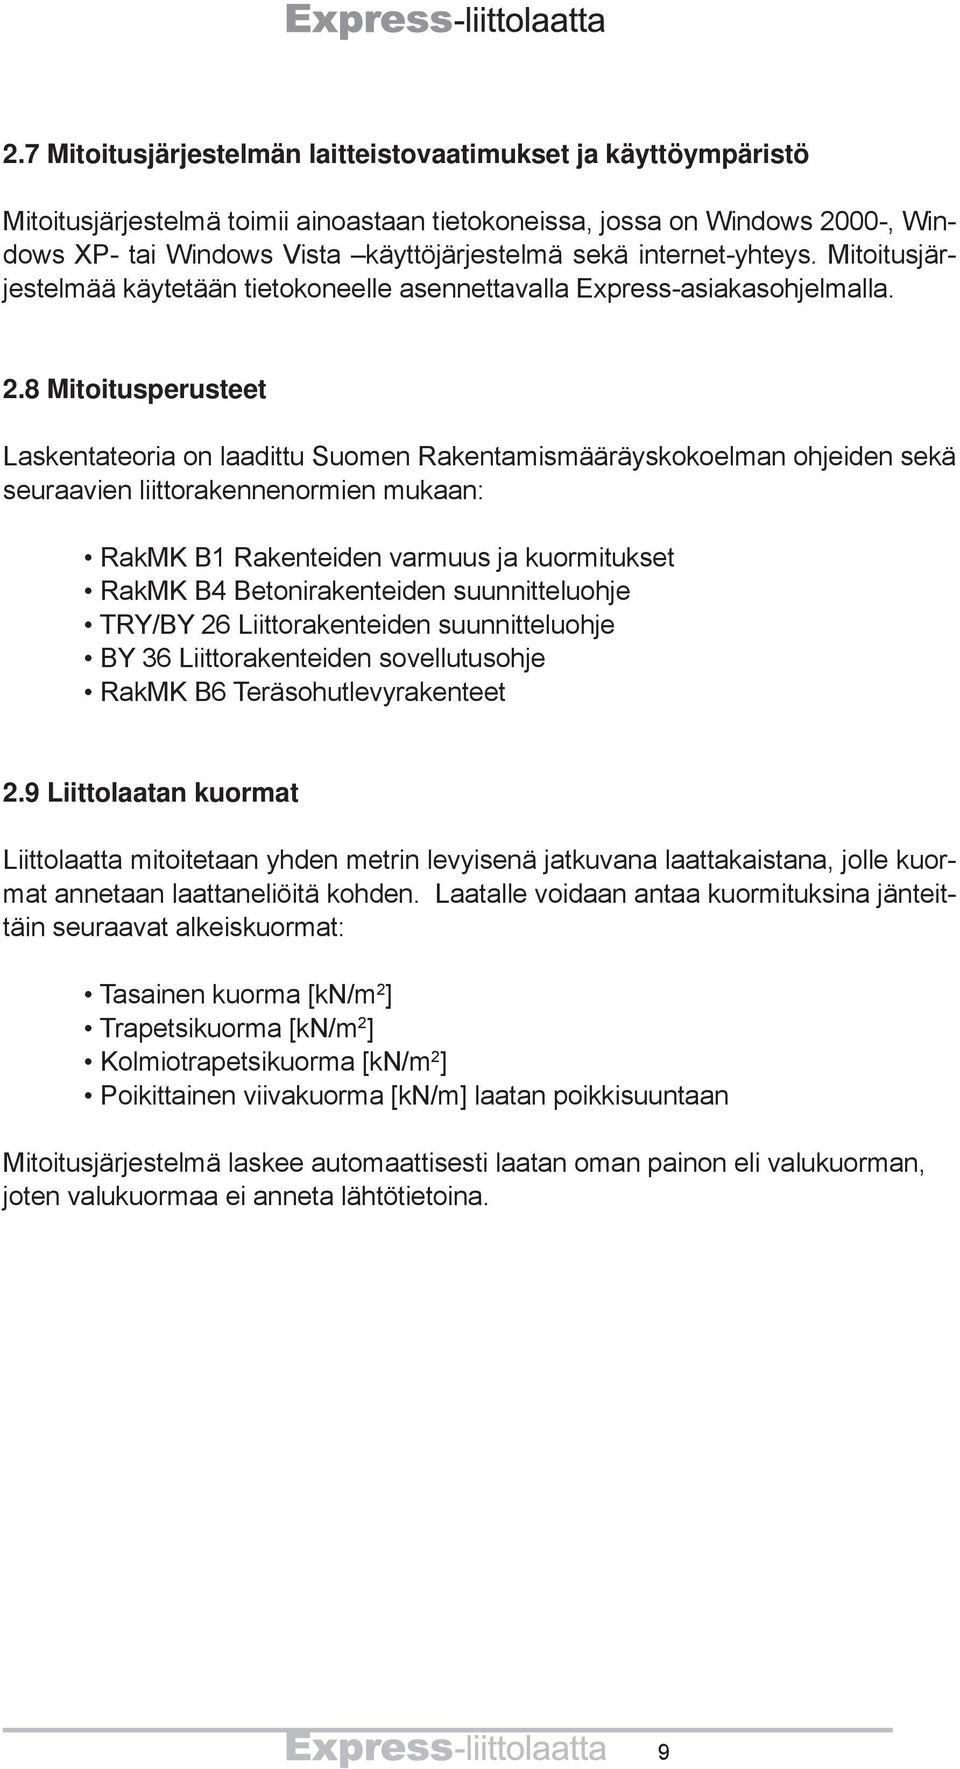 8 Mitoitusperusteet Laskentateoria on laadittu Suomen Rakentamismääräyskokoelman ohjeiden sekä seuraavien liittorakennenormien mukaan: RakMK B1 Rakenteiden varmuus ja kuormitukset RakMK B4